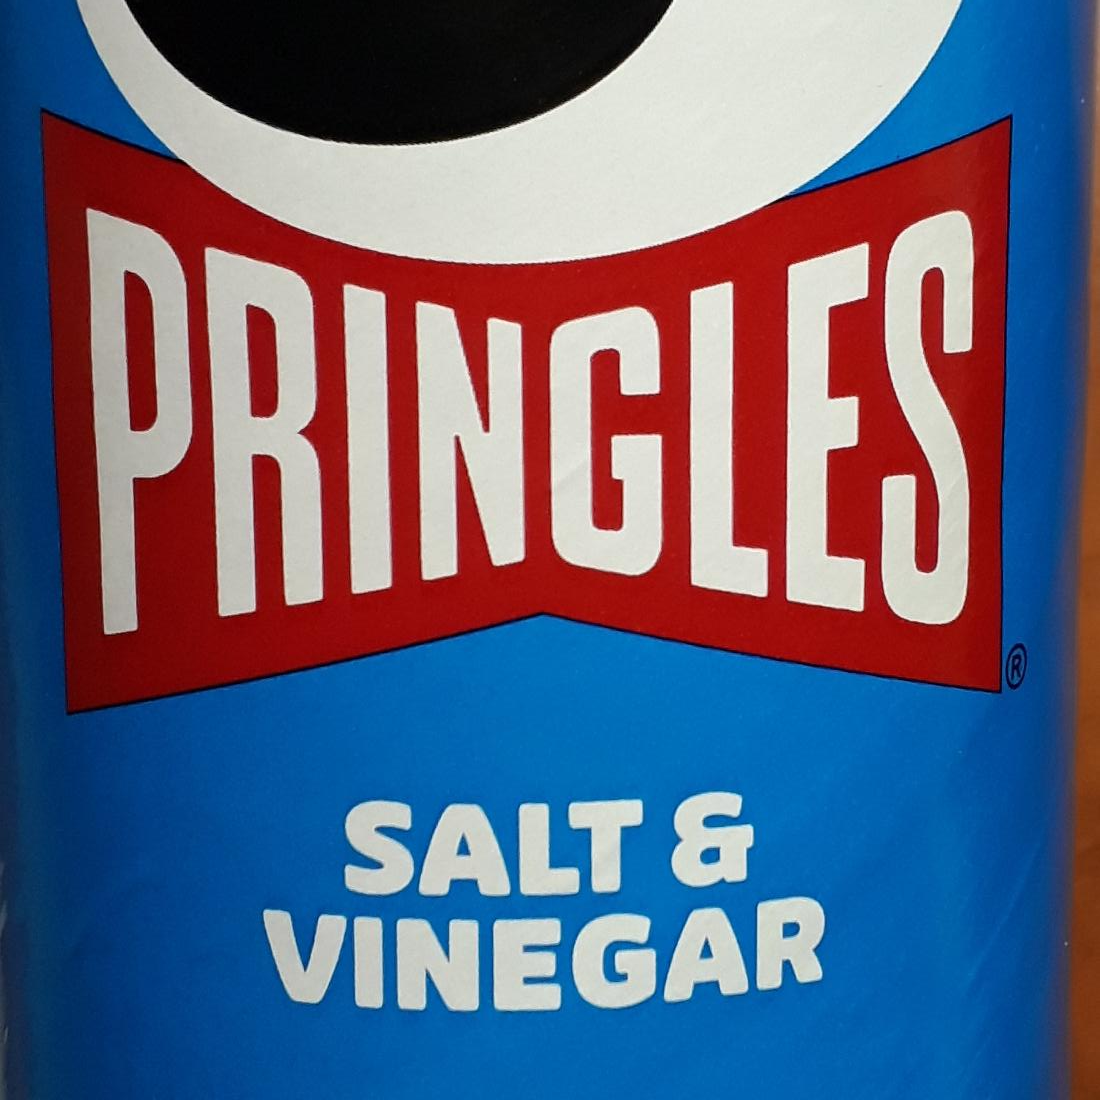 Fotografie - Pringles Salt&Vinegar